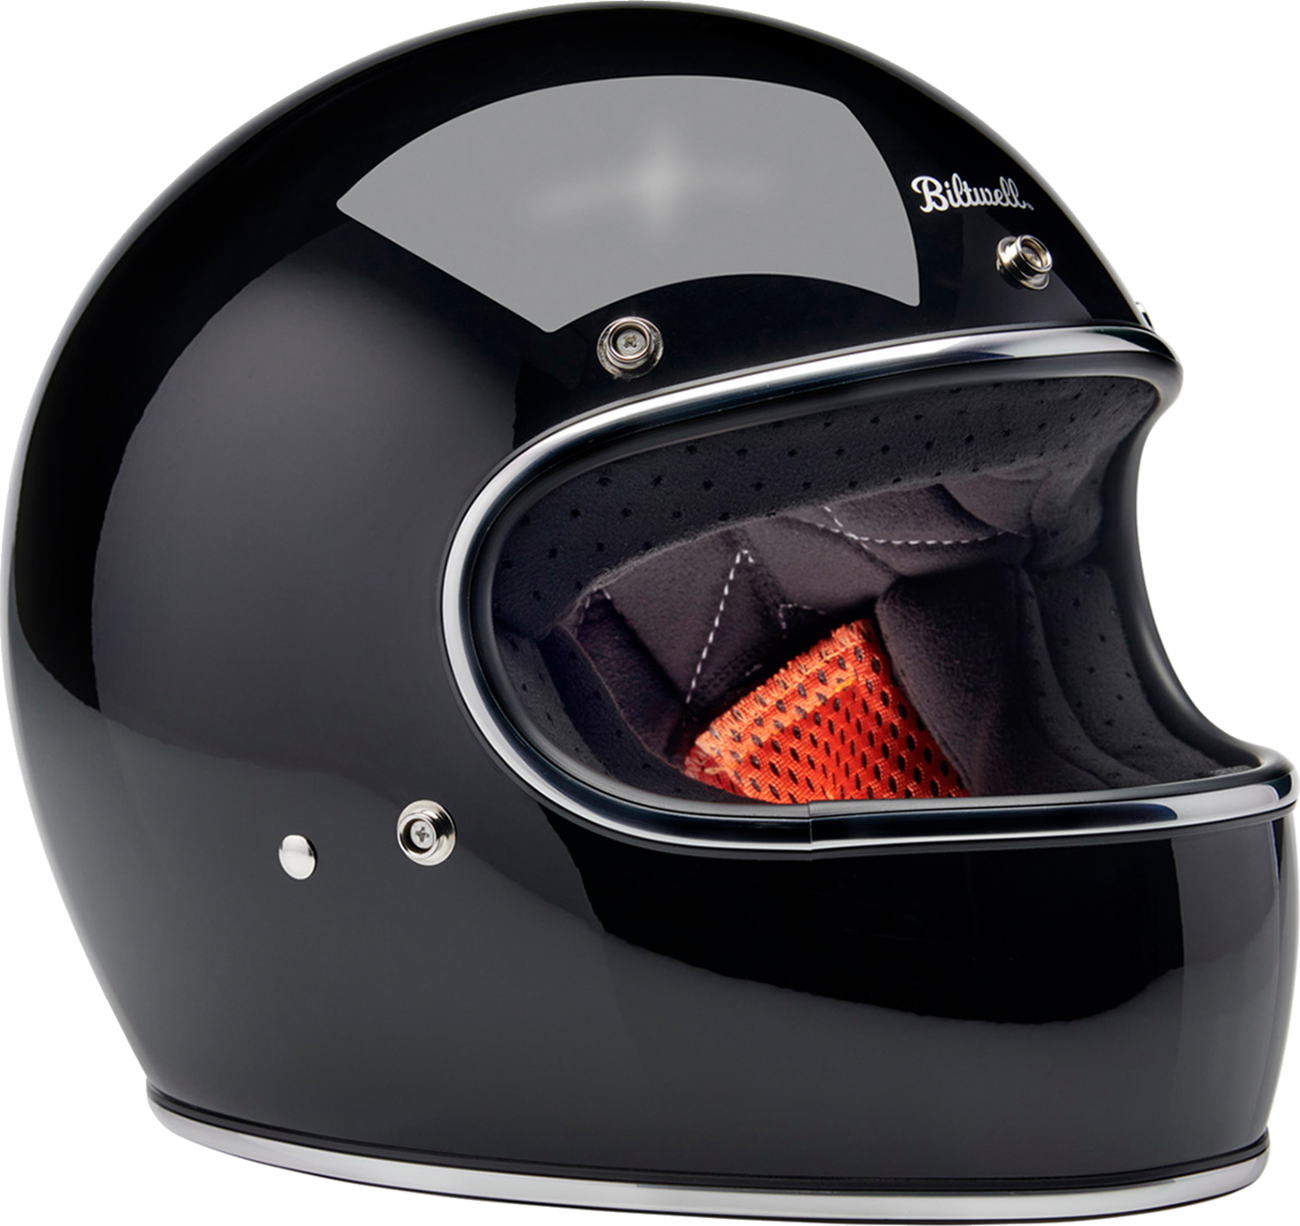 BILTWELL Gringo Helmet - Gloss Black - Large 1002-101-504